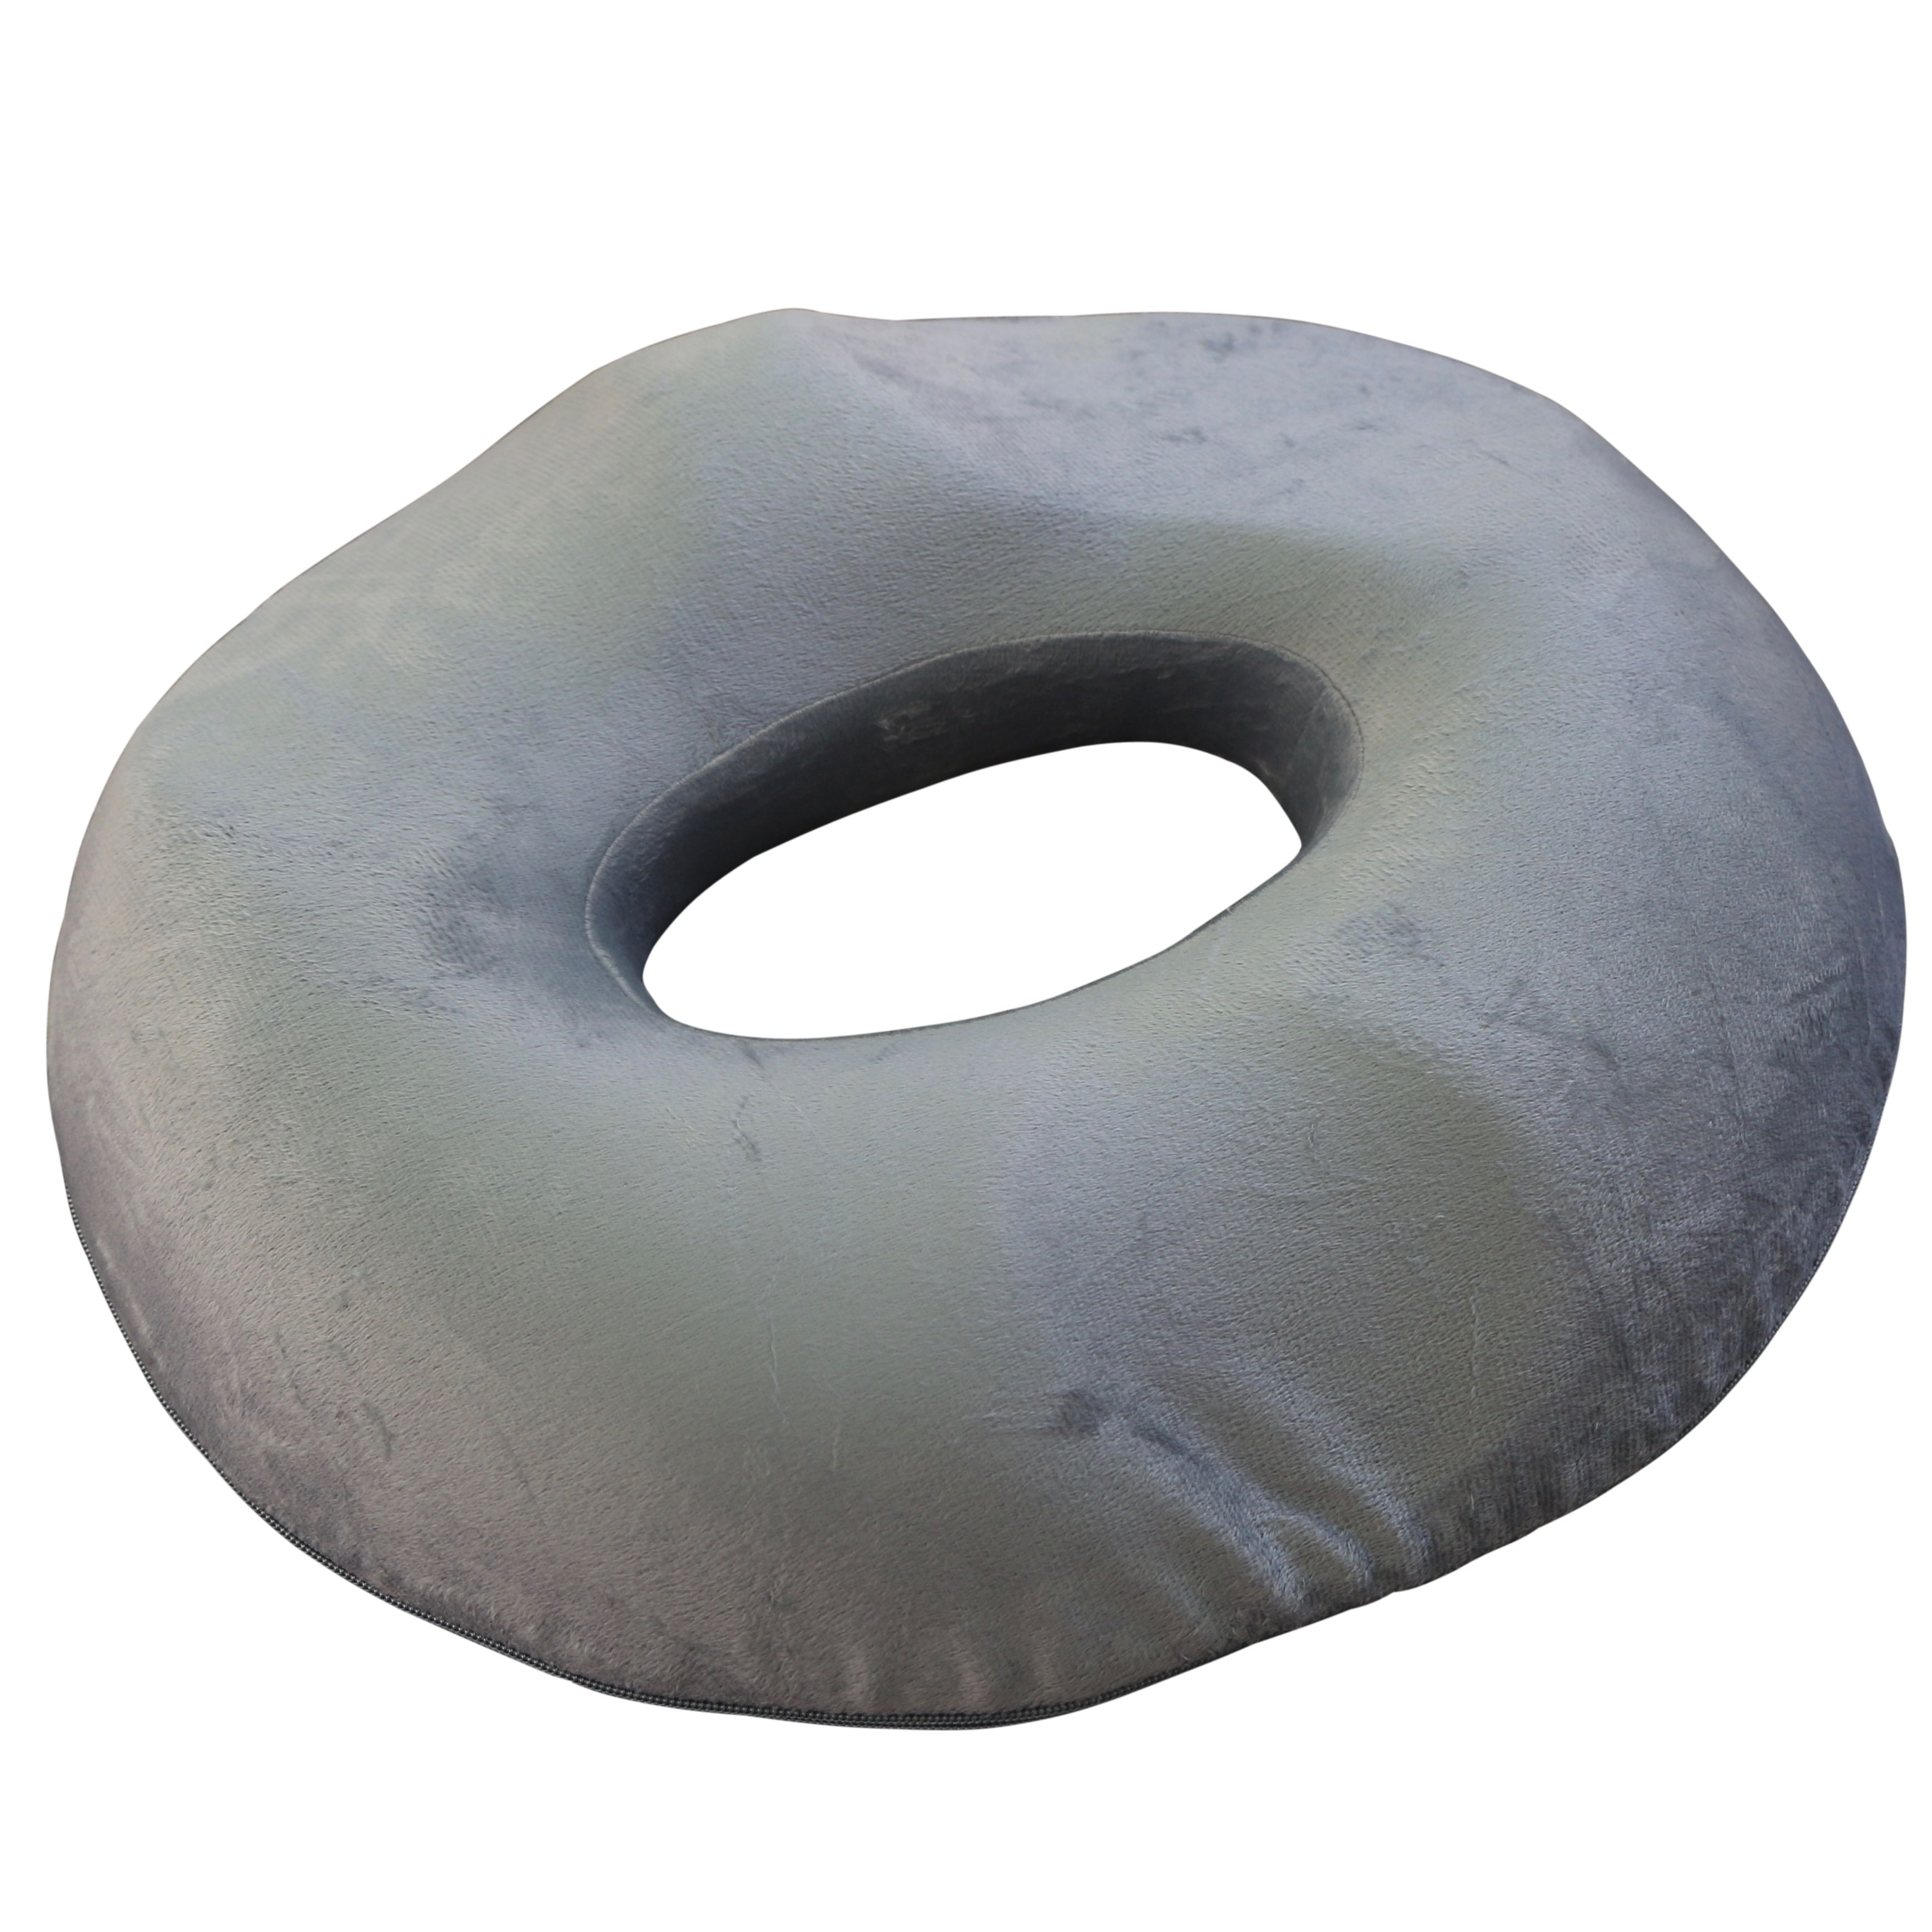 doughnut cushion